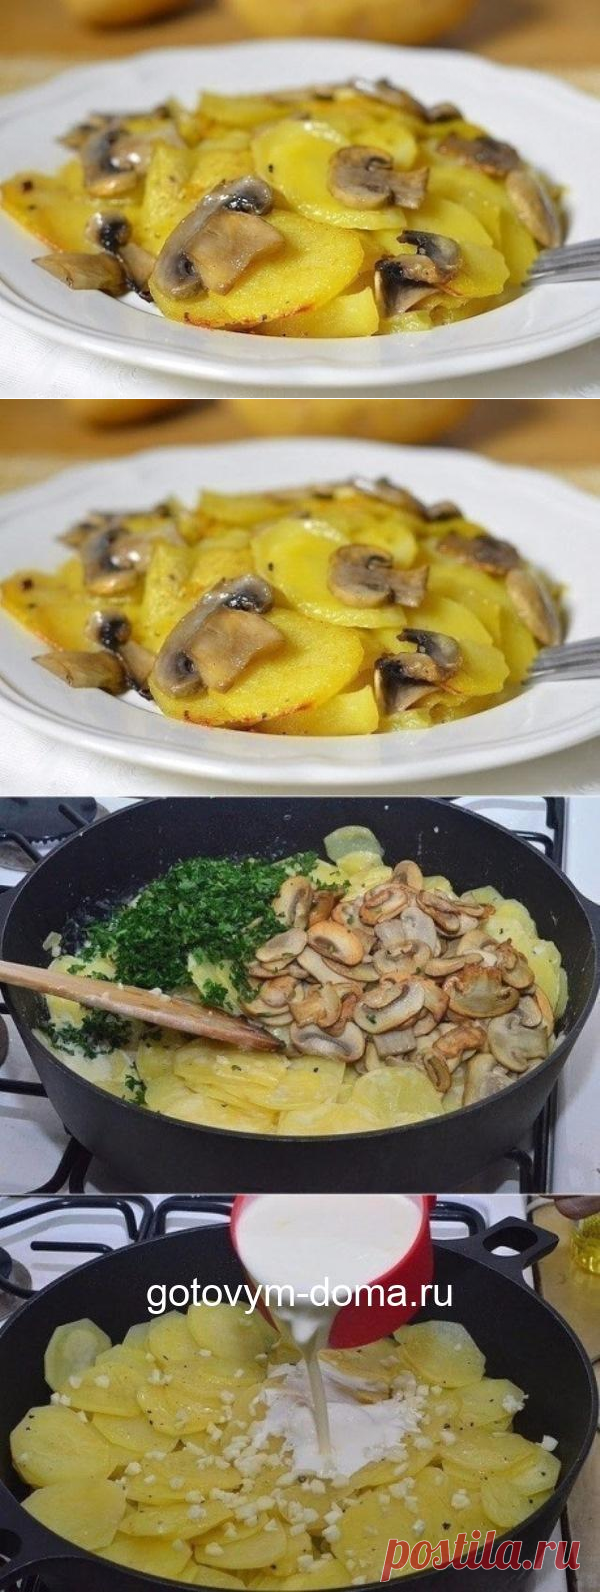 Новый вкусный рецепт приготовления картошки с грибами в сливках